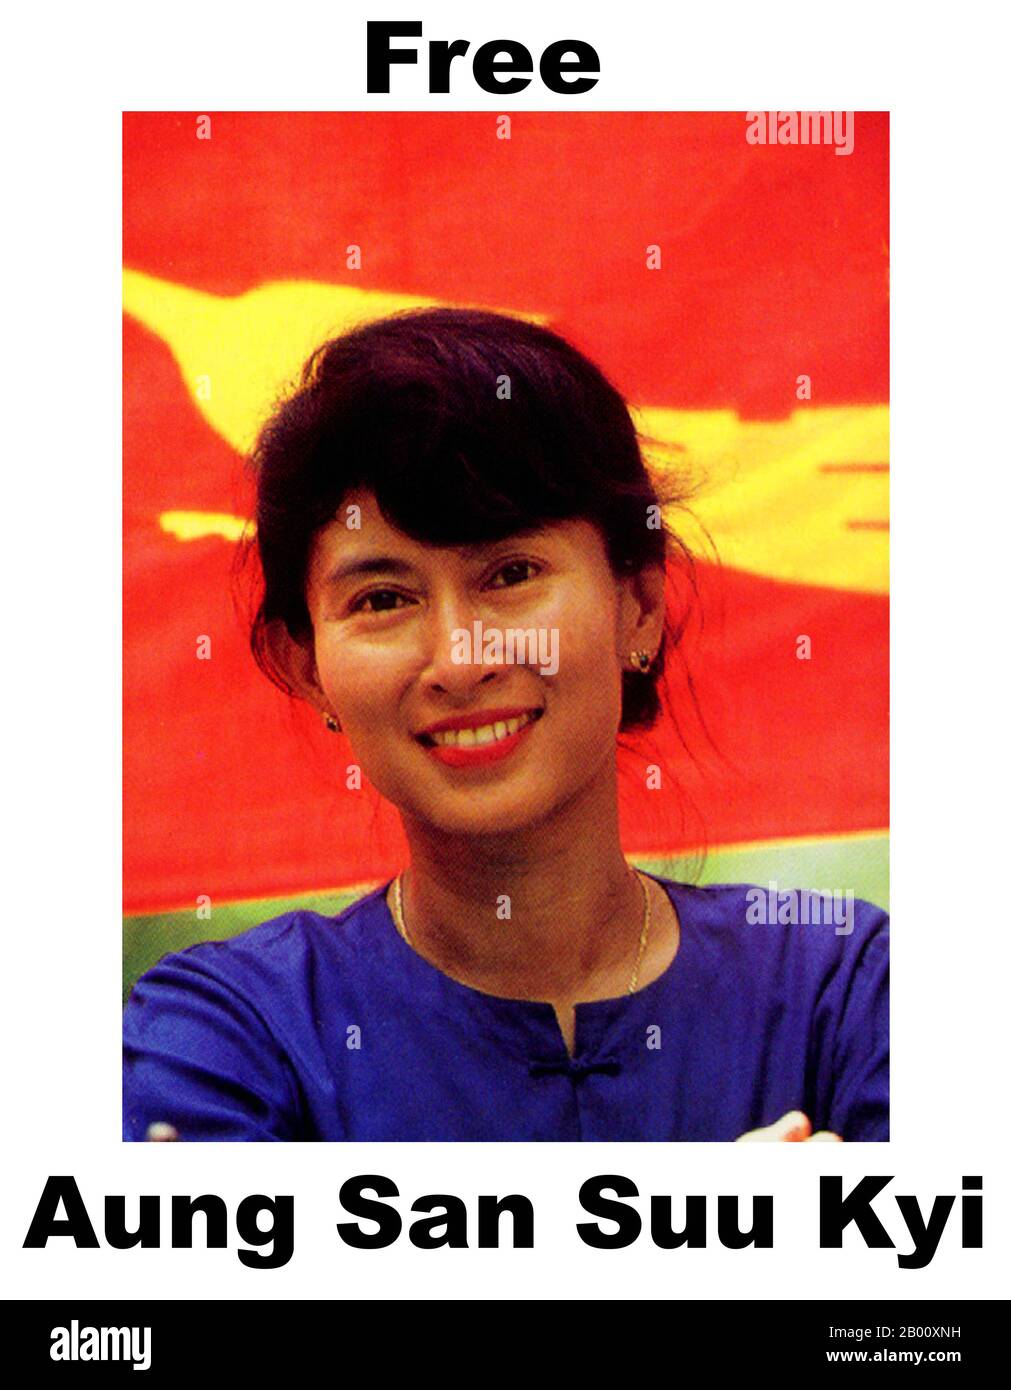 Birmania/Myanmar: DAW Aung San Suu Kyi (1945), politico birmano, 'democrat' e leader dell'opposizione. Aung San Suu Kyi (sopportato il giugno 19 1945) è un politico birmano dell'opposizione e Segretario generale della lega nazionale per la democrazia. Nelle elezioni generali del 1990, Suu Kyi è stato eletto primo Ministro come leader del partito vincitore della Lega Nazionale per la democrazia, che ha vinto il 59% dei voti e 394 dei 492 seggi. Tuttavia, era già stata trattenuta agli arresti domiciliari prima delle elezioni. Rimase agli arresti domiciliari in Myanmar per quasi 15 anni fino al 2010. Foto Stock